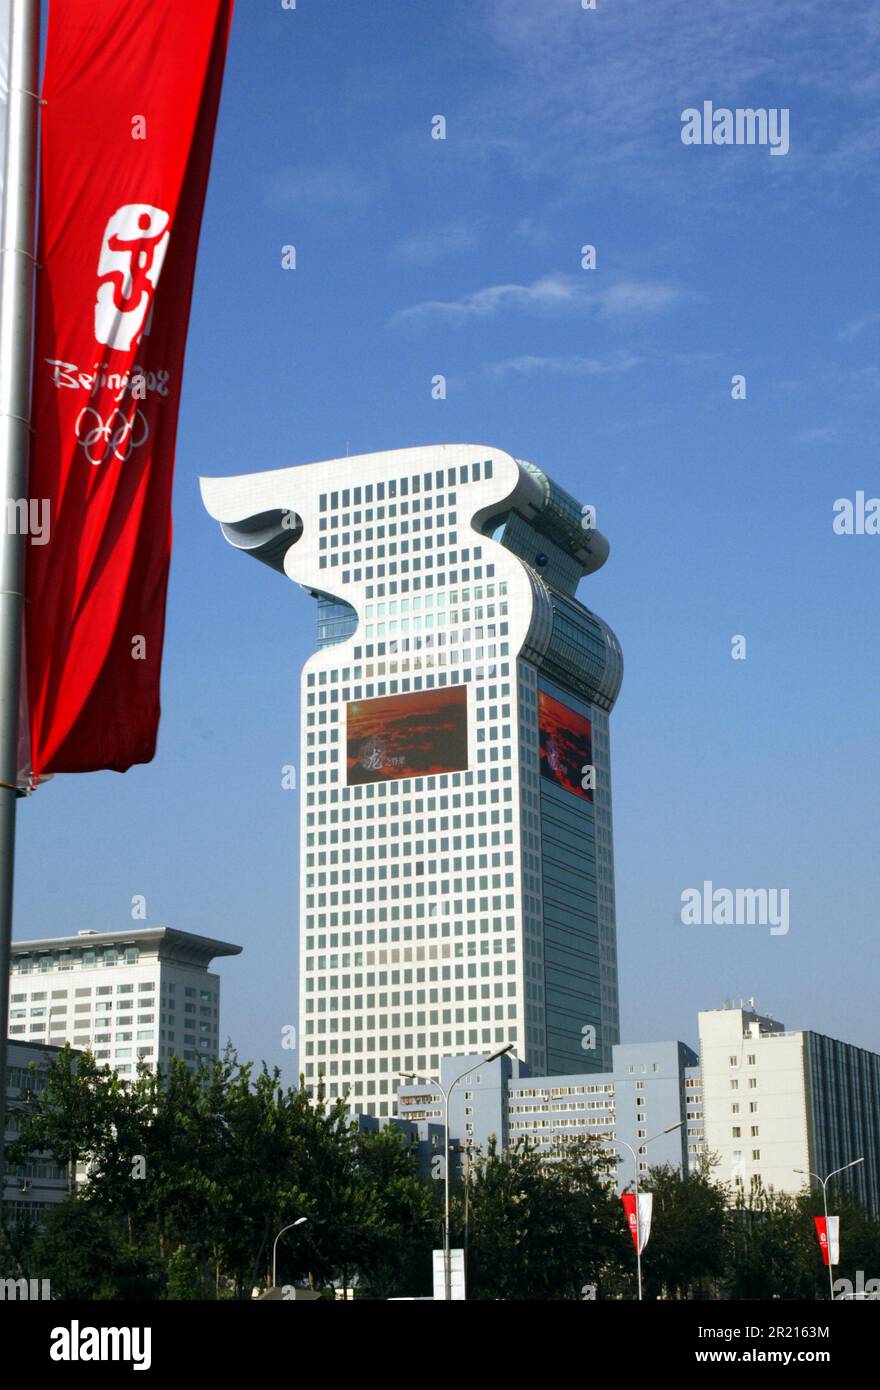 Pangu Plaza, Peking, China: Pekings moderne Architektur - Pangu Plaza in der Nähe des Olympischen Dorfes in Peking - die 2. Bis 4. Etage des Gebäudes sind hauptsächlich Businesshallen für Banken; Die Etagen von 5. bis 30. sind in drei Bürobereiche für multinationale Unternehmen in den Bereichen Finanzen und Wertpapieranlagen unterteilt. Stockfoto